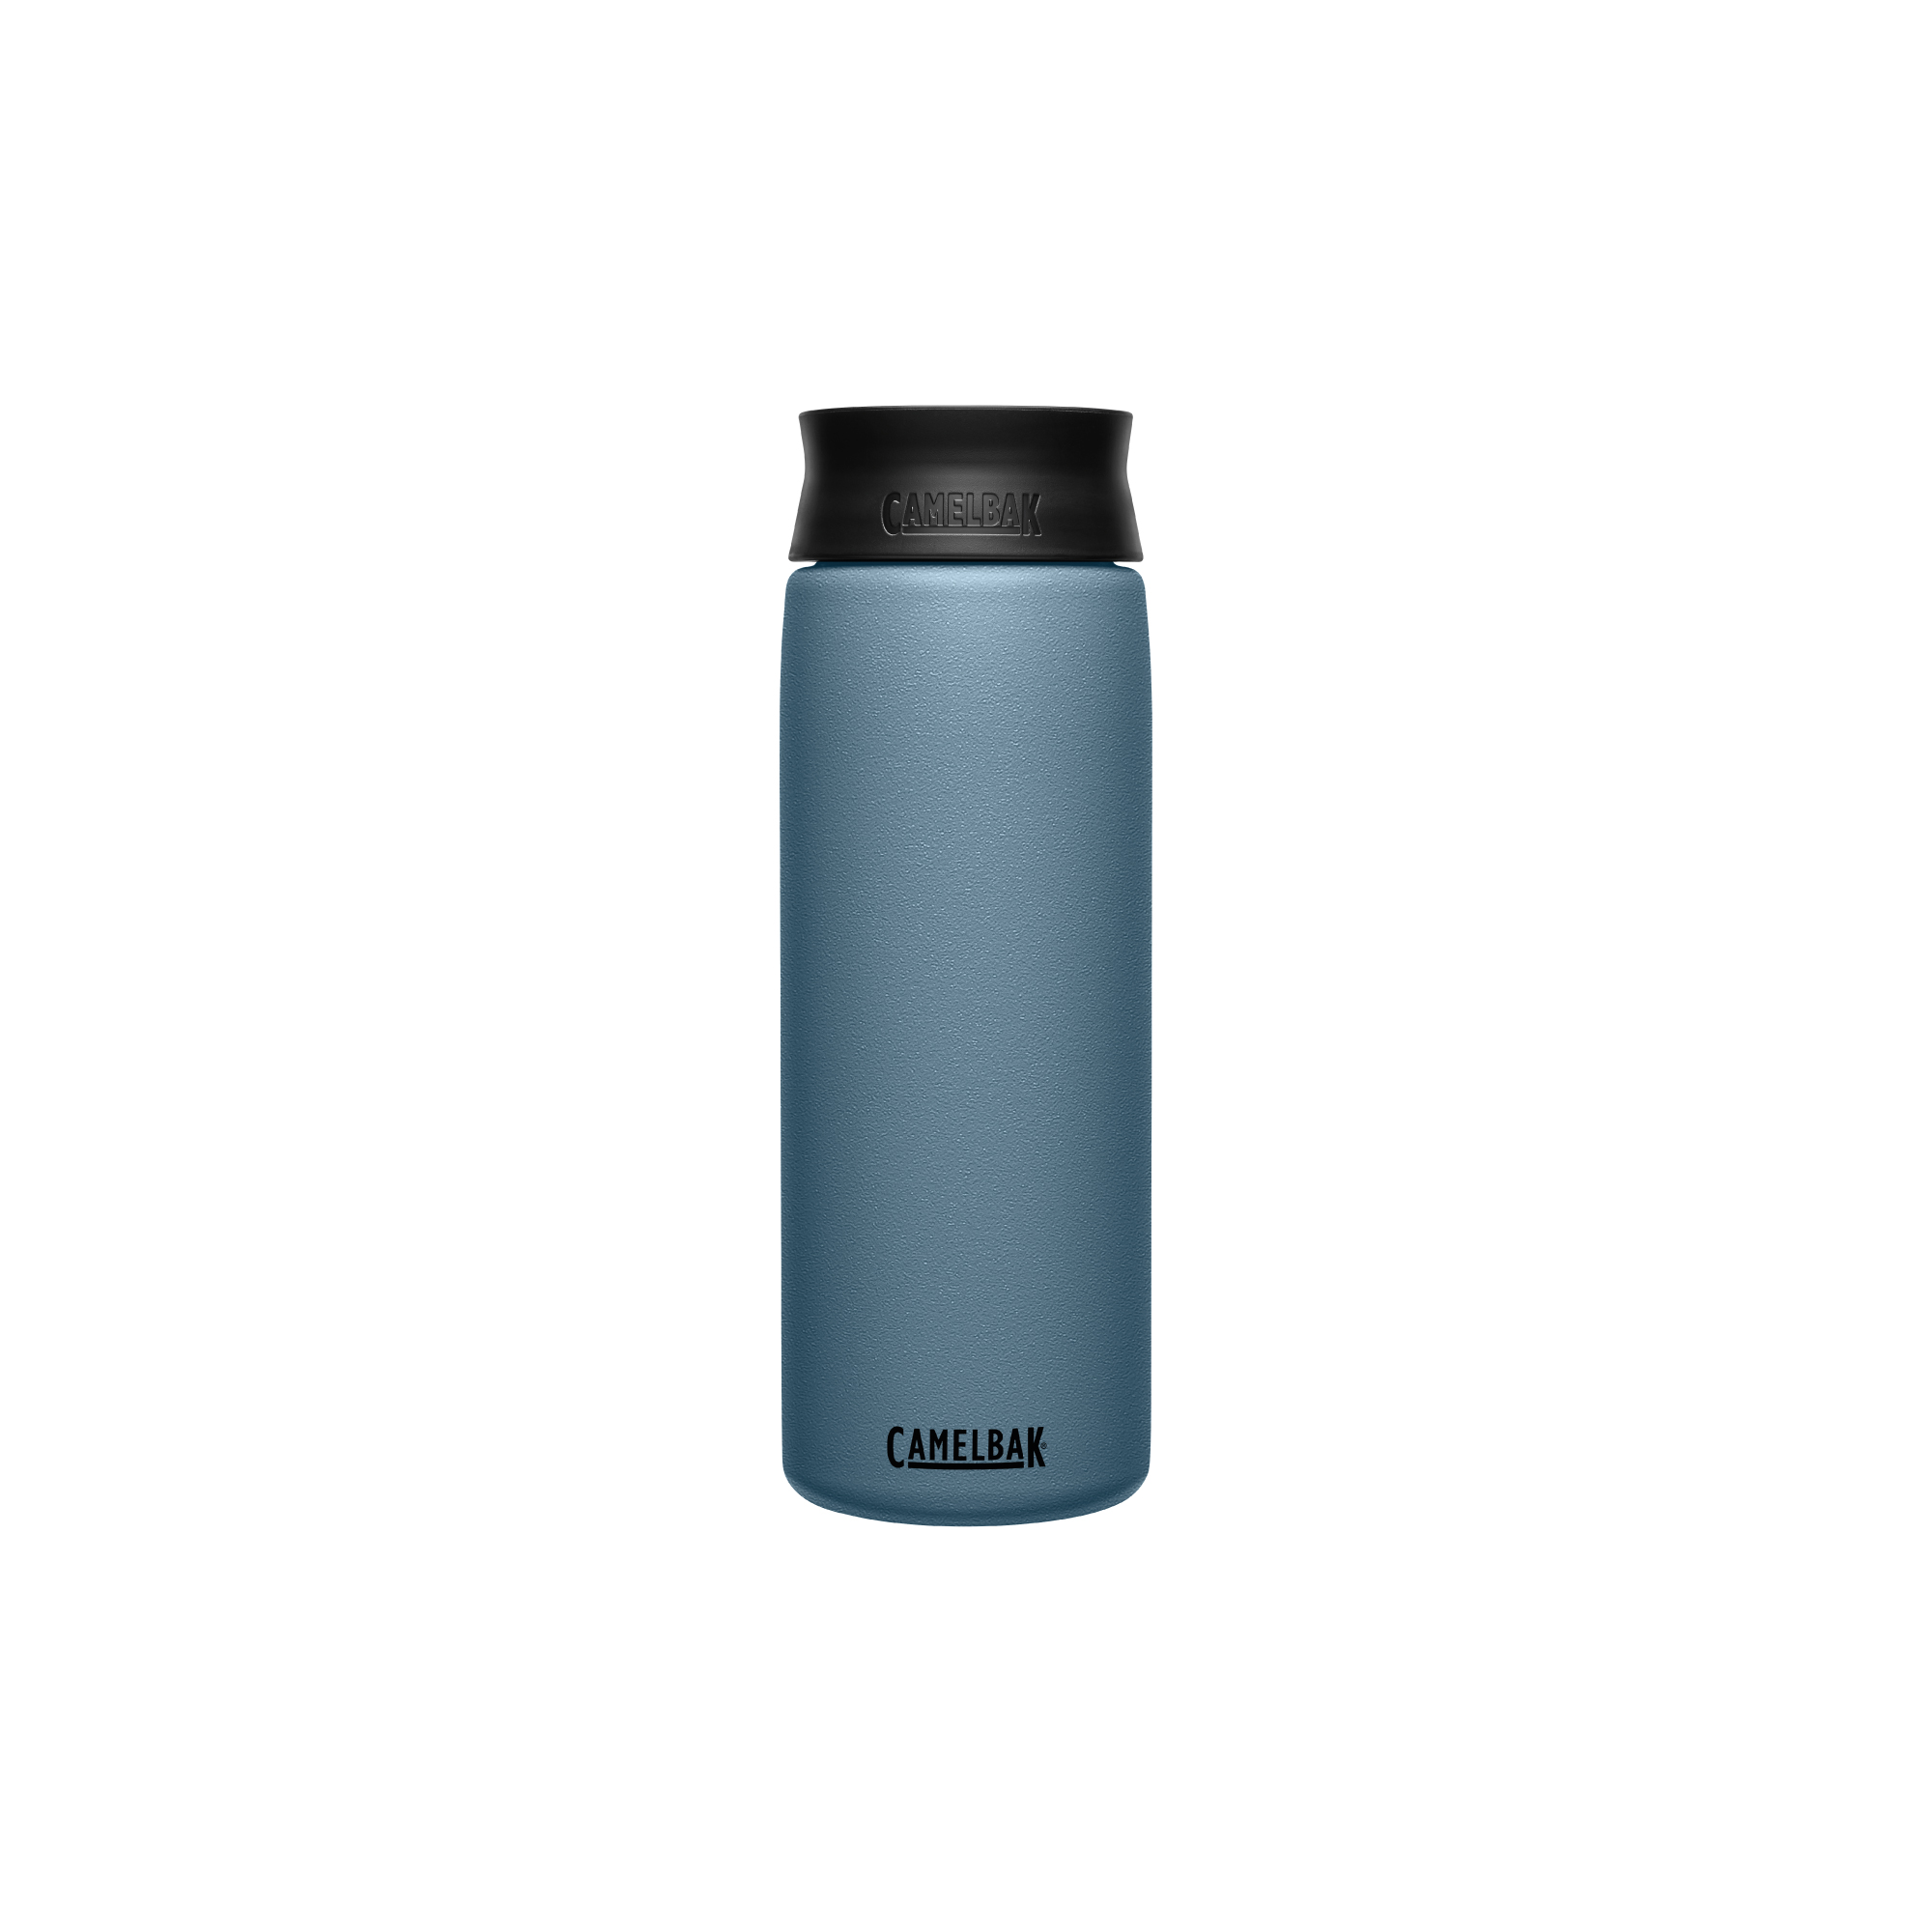 Camelbak thermal mug Hot Cap Vacuum Insulated 600ml blue grey